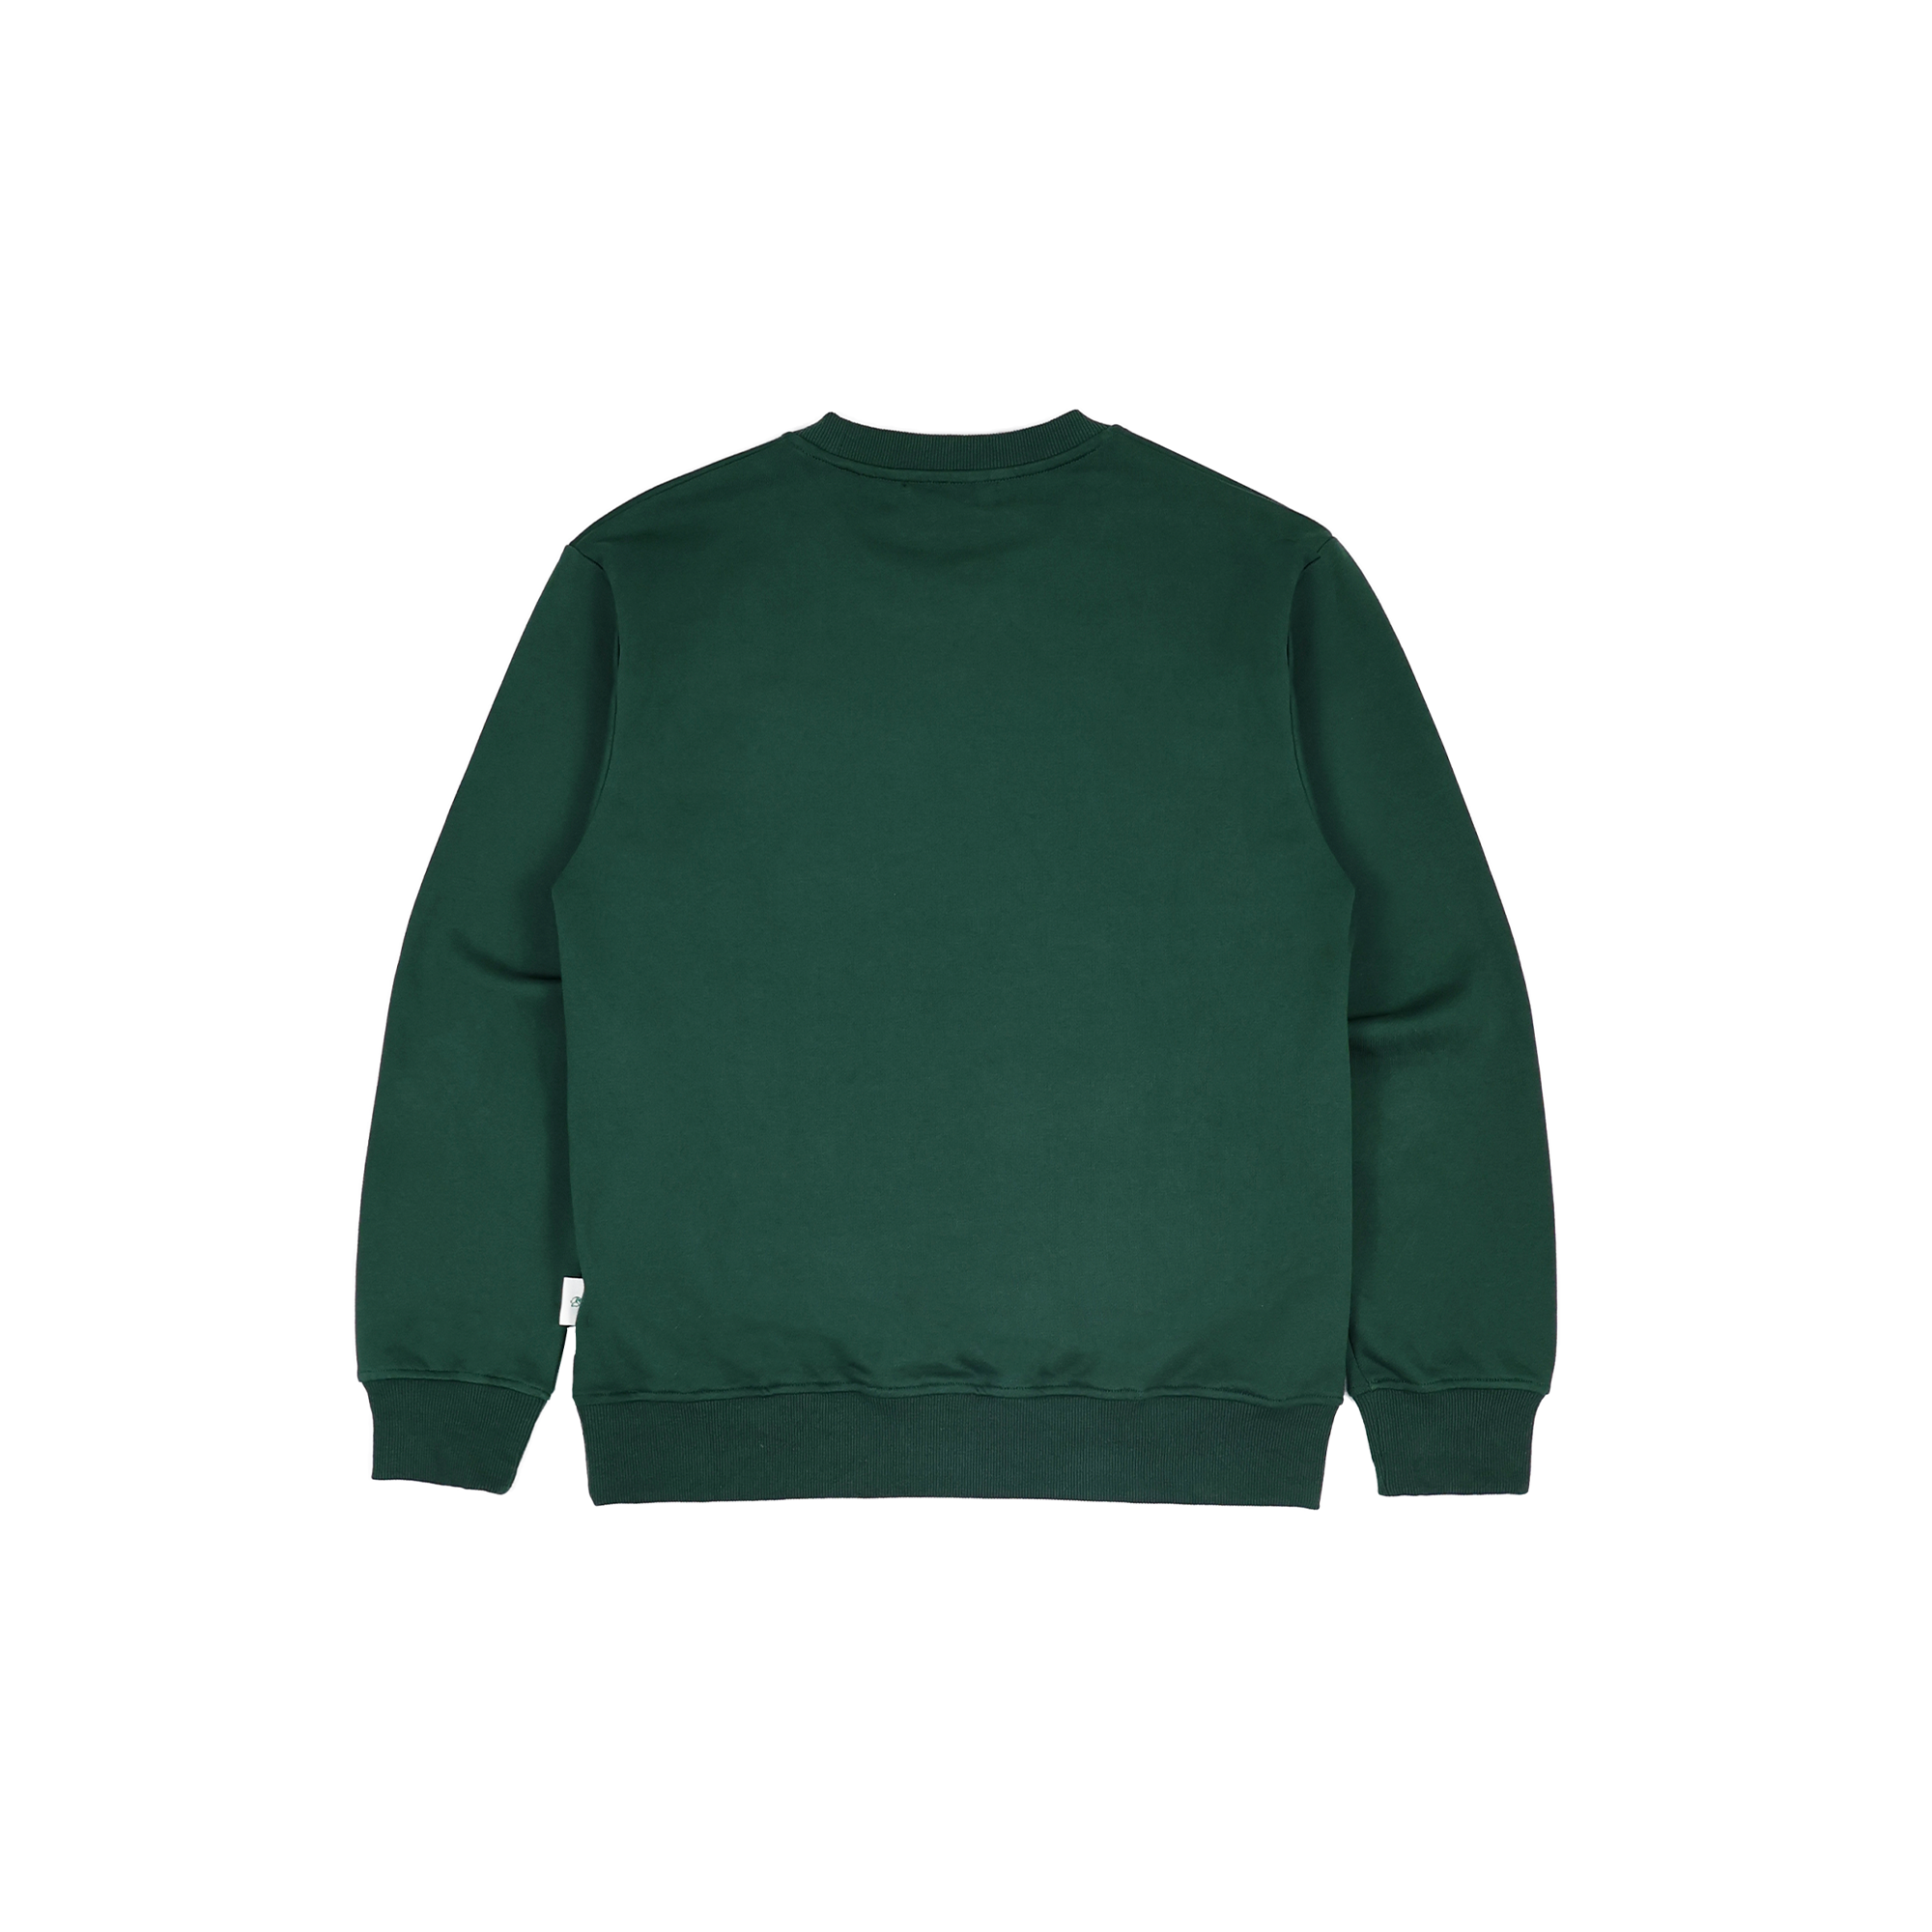 Gubi Embroidered Sweatshirt | Brand green | Hong Kong original design